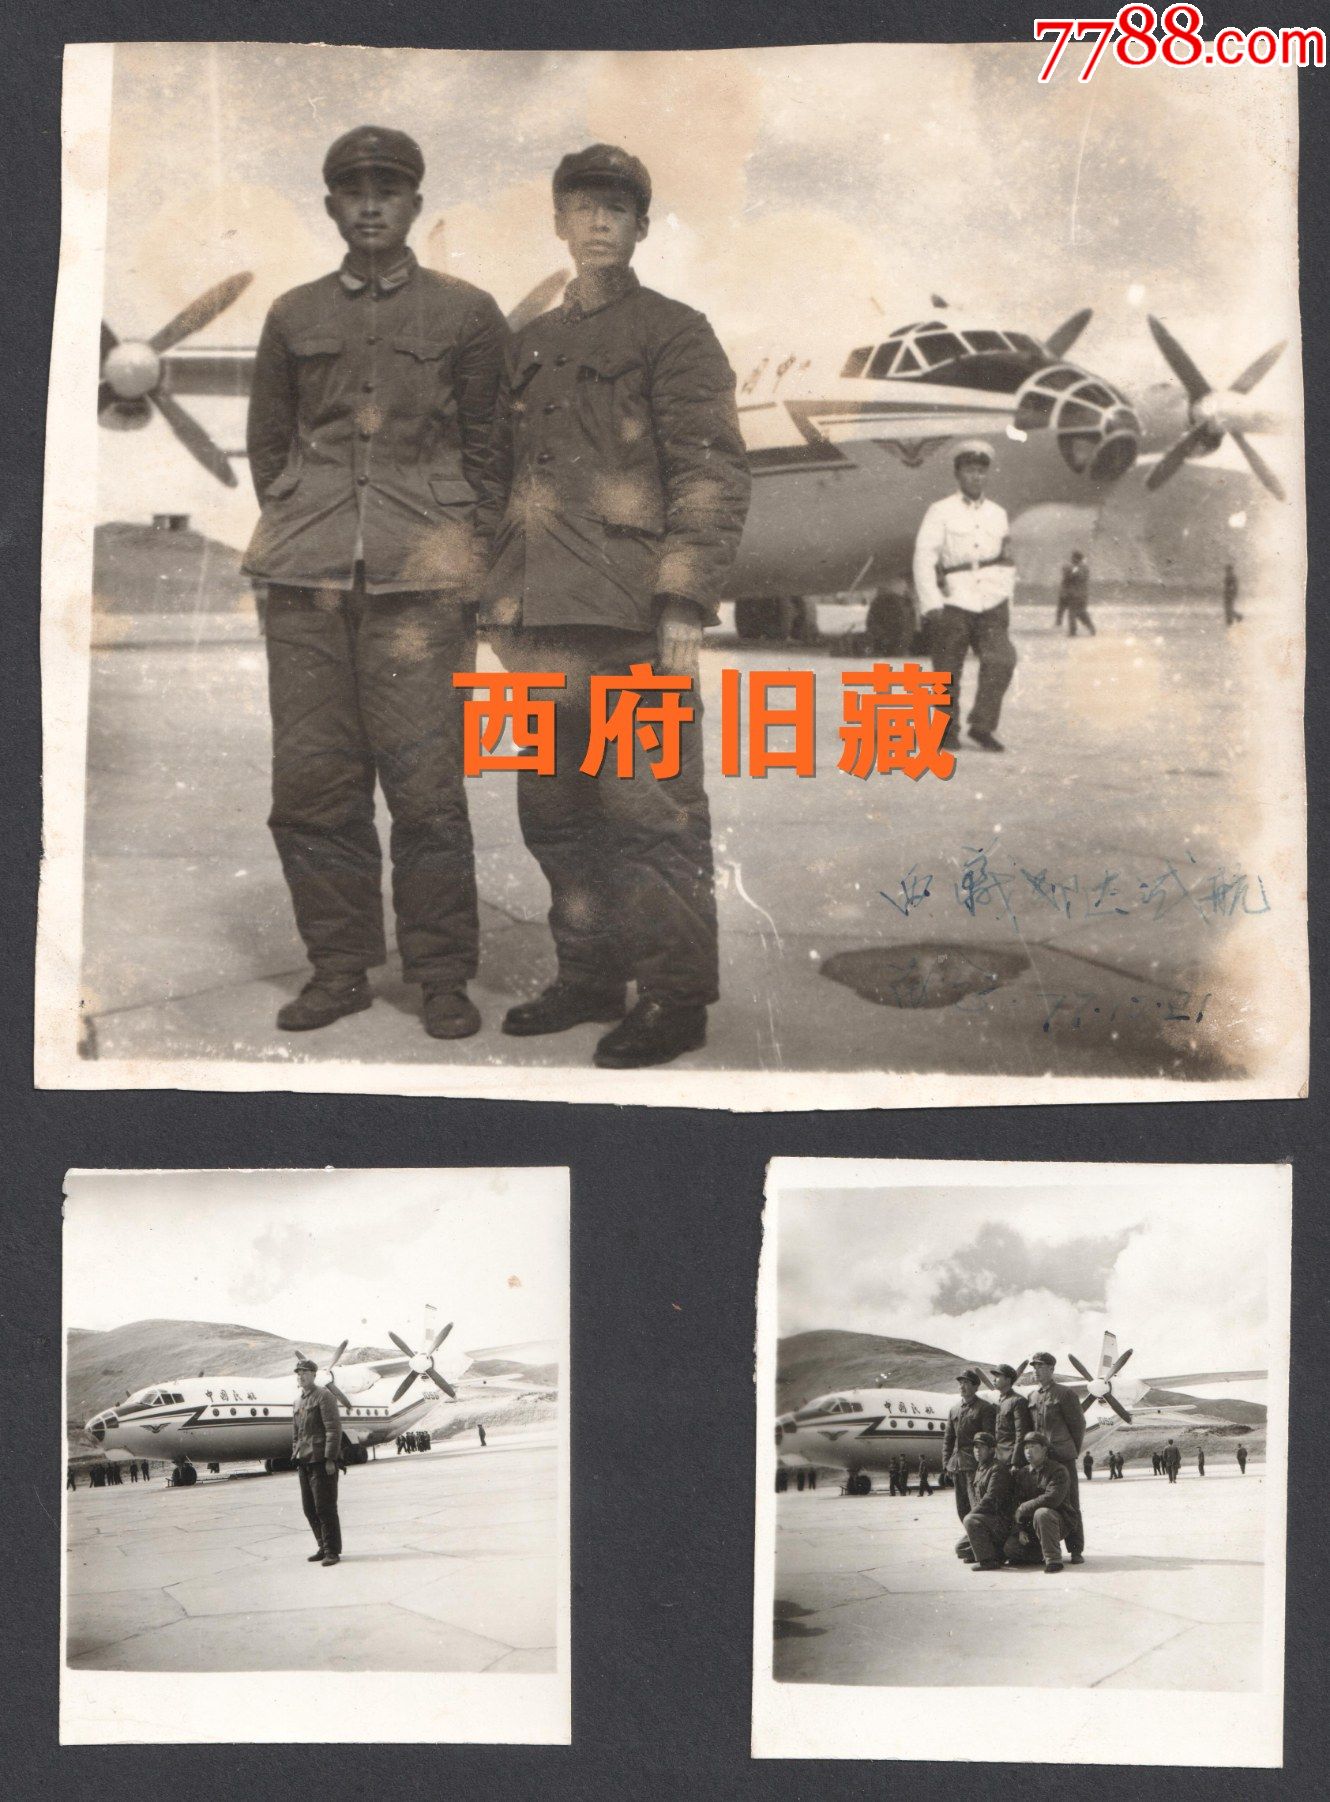 七十年代,西藏昌都邦达机场试航留念老照片3张